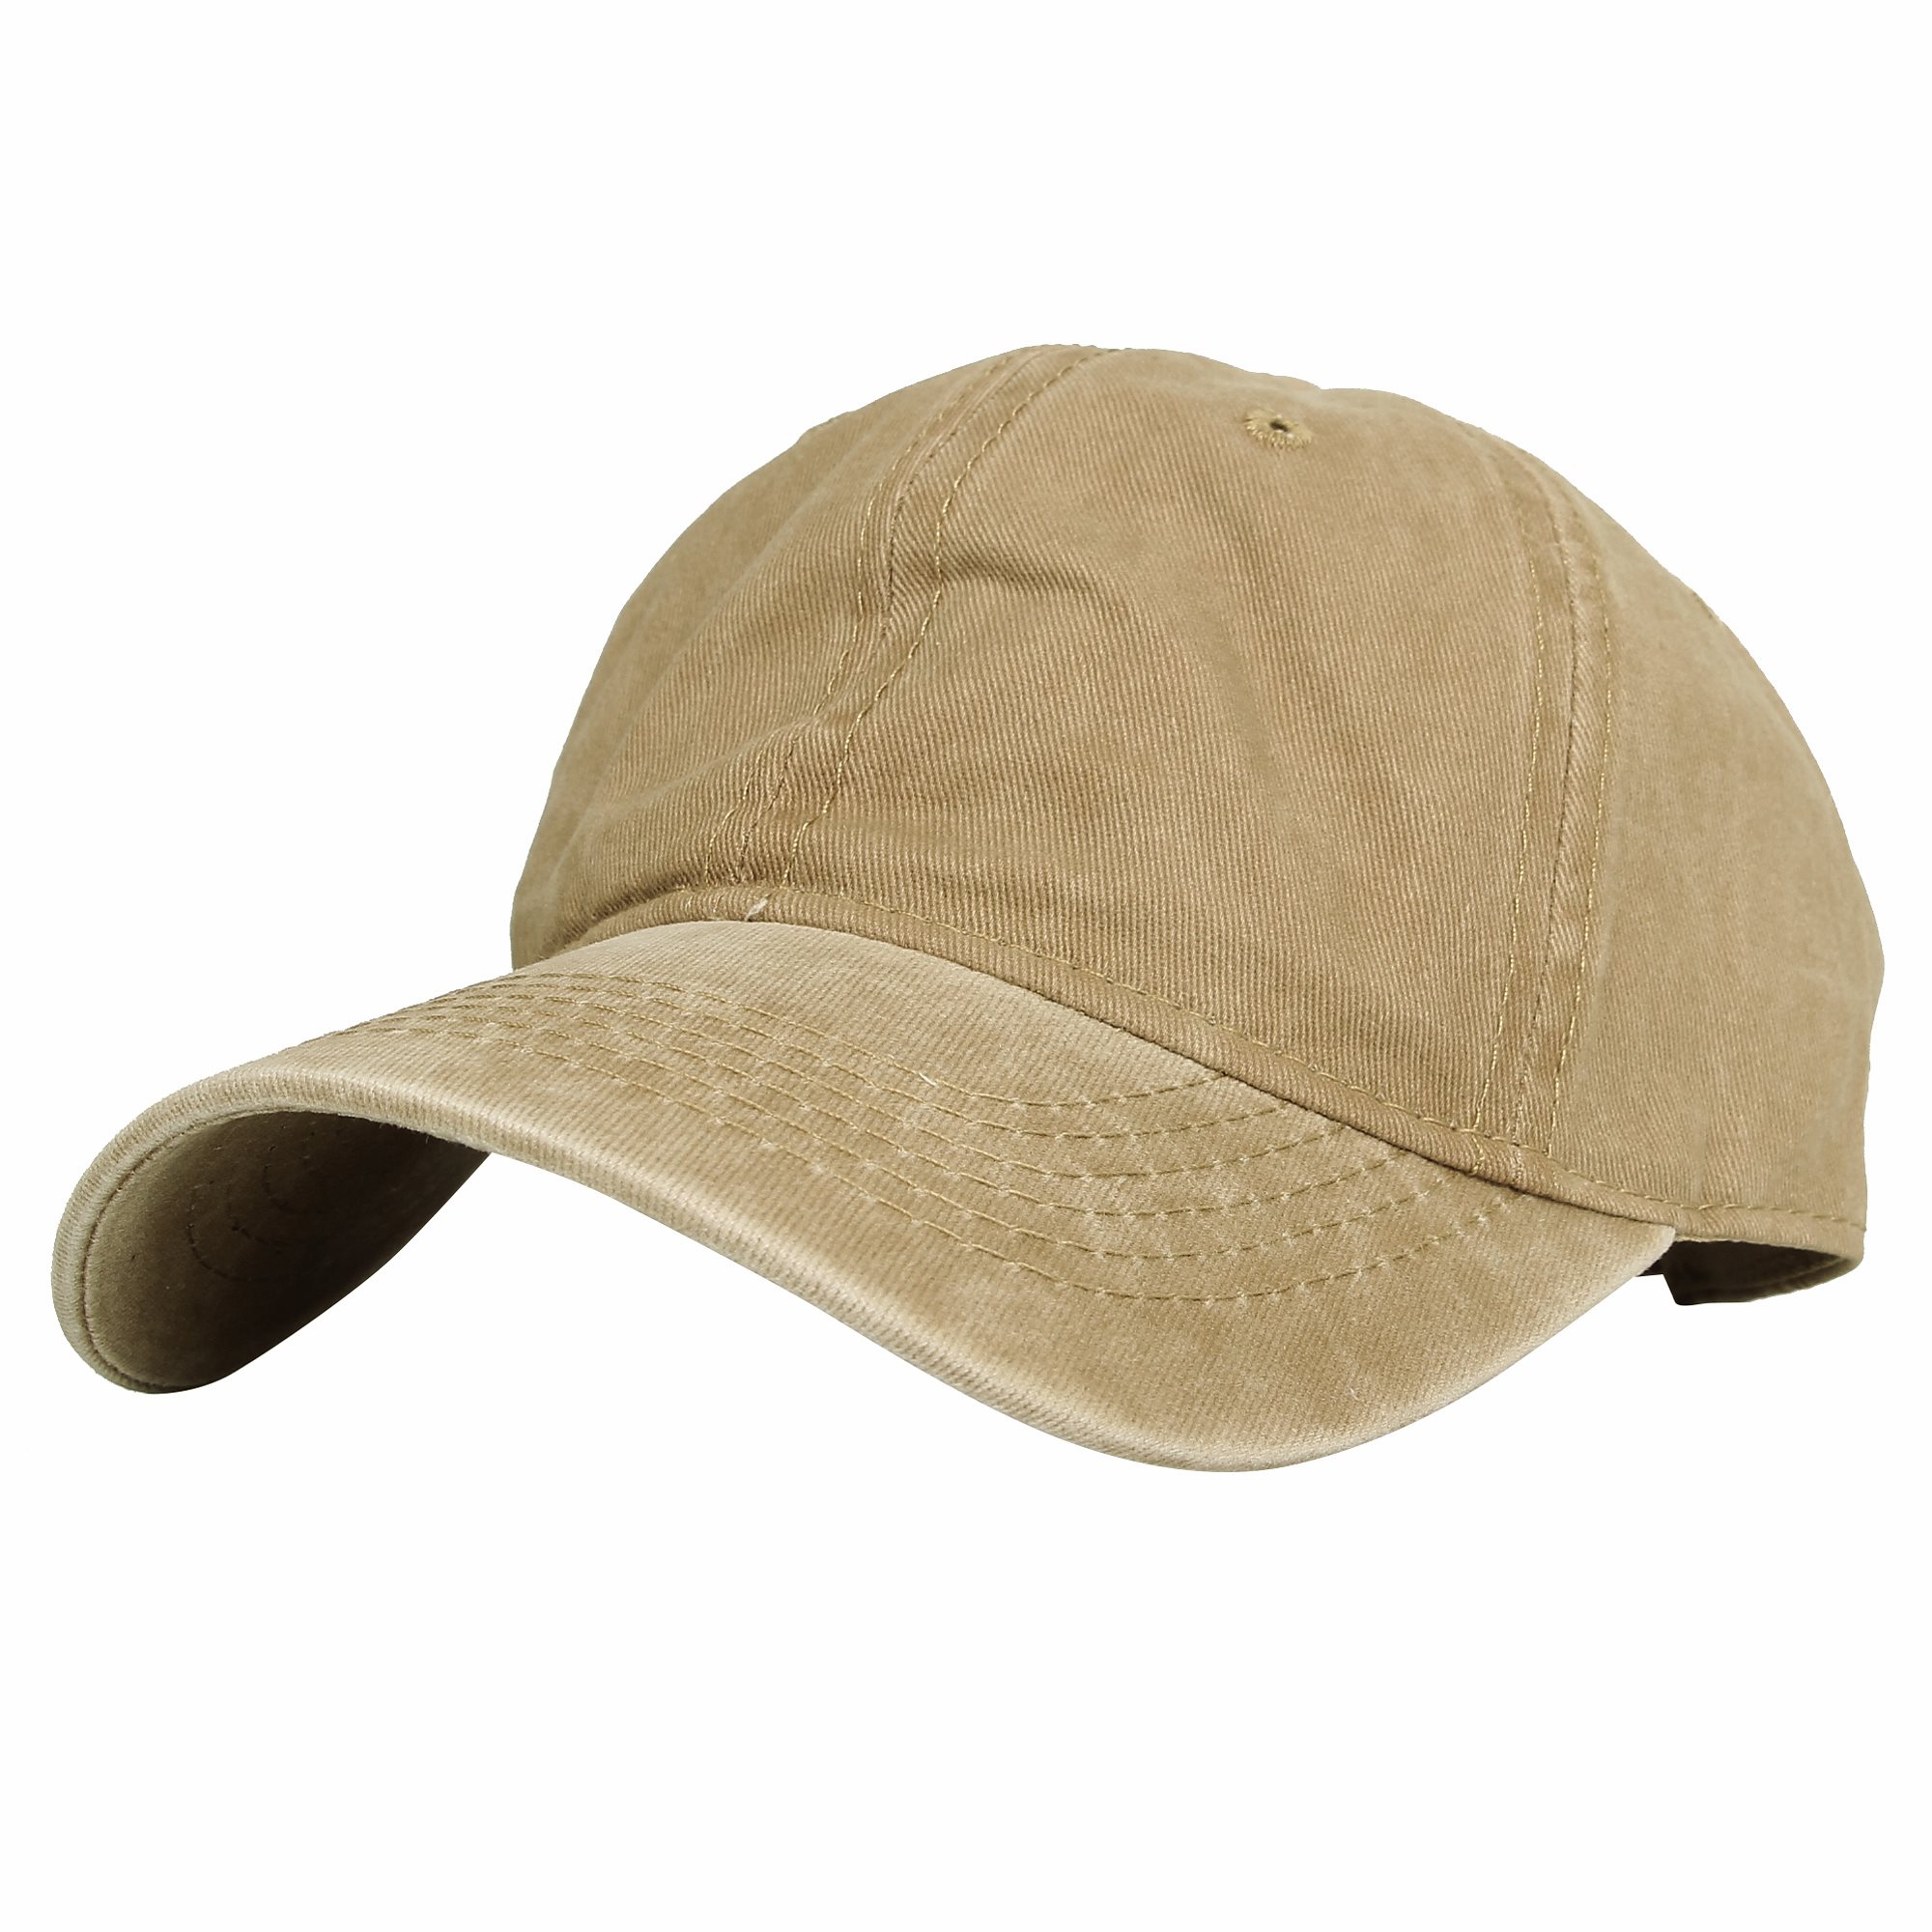 WITHMOONS球帽キャップ 帽子 キャップ メンズ スポーツ 野球帽コットン素材 サンドブラスト（砂吹き）ボールキャップ サイズ調整可能 KZ10032